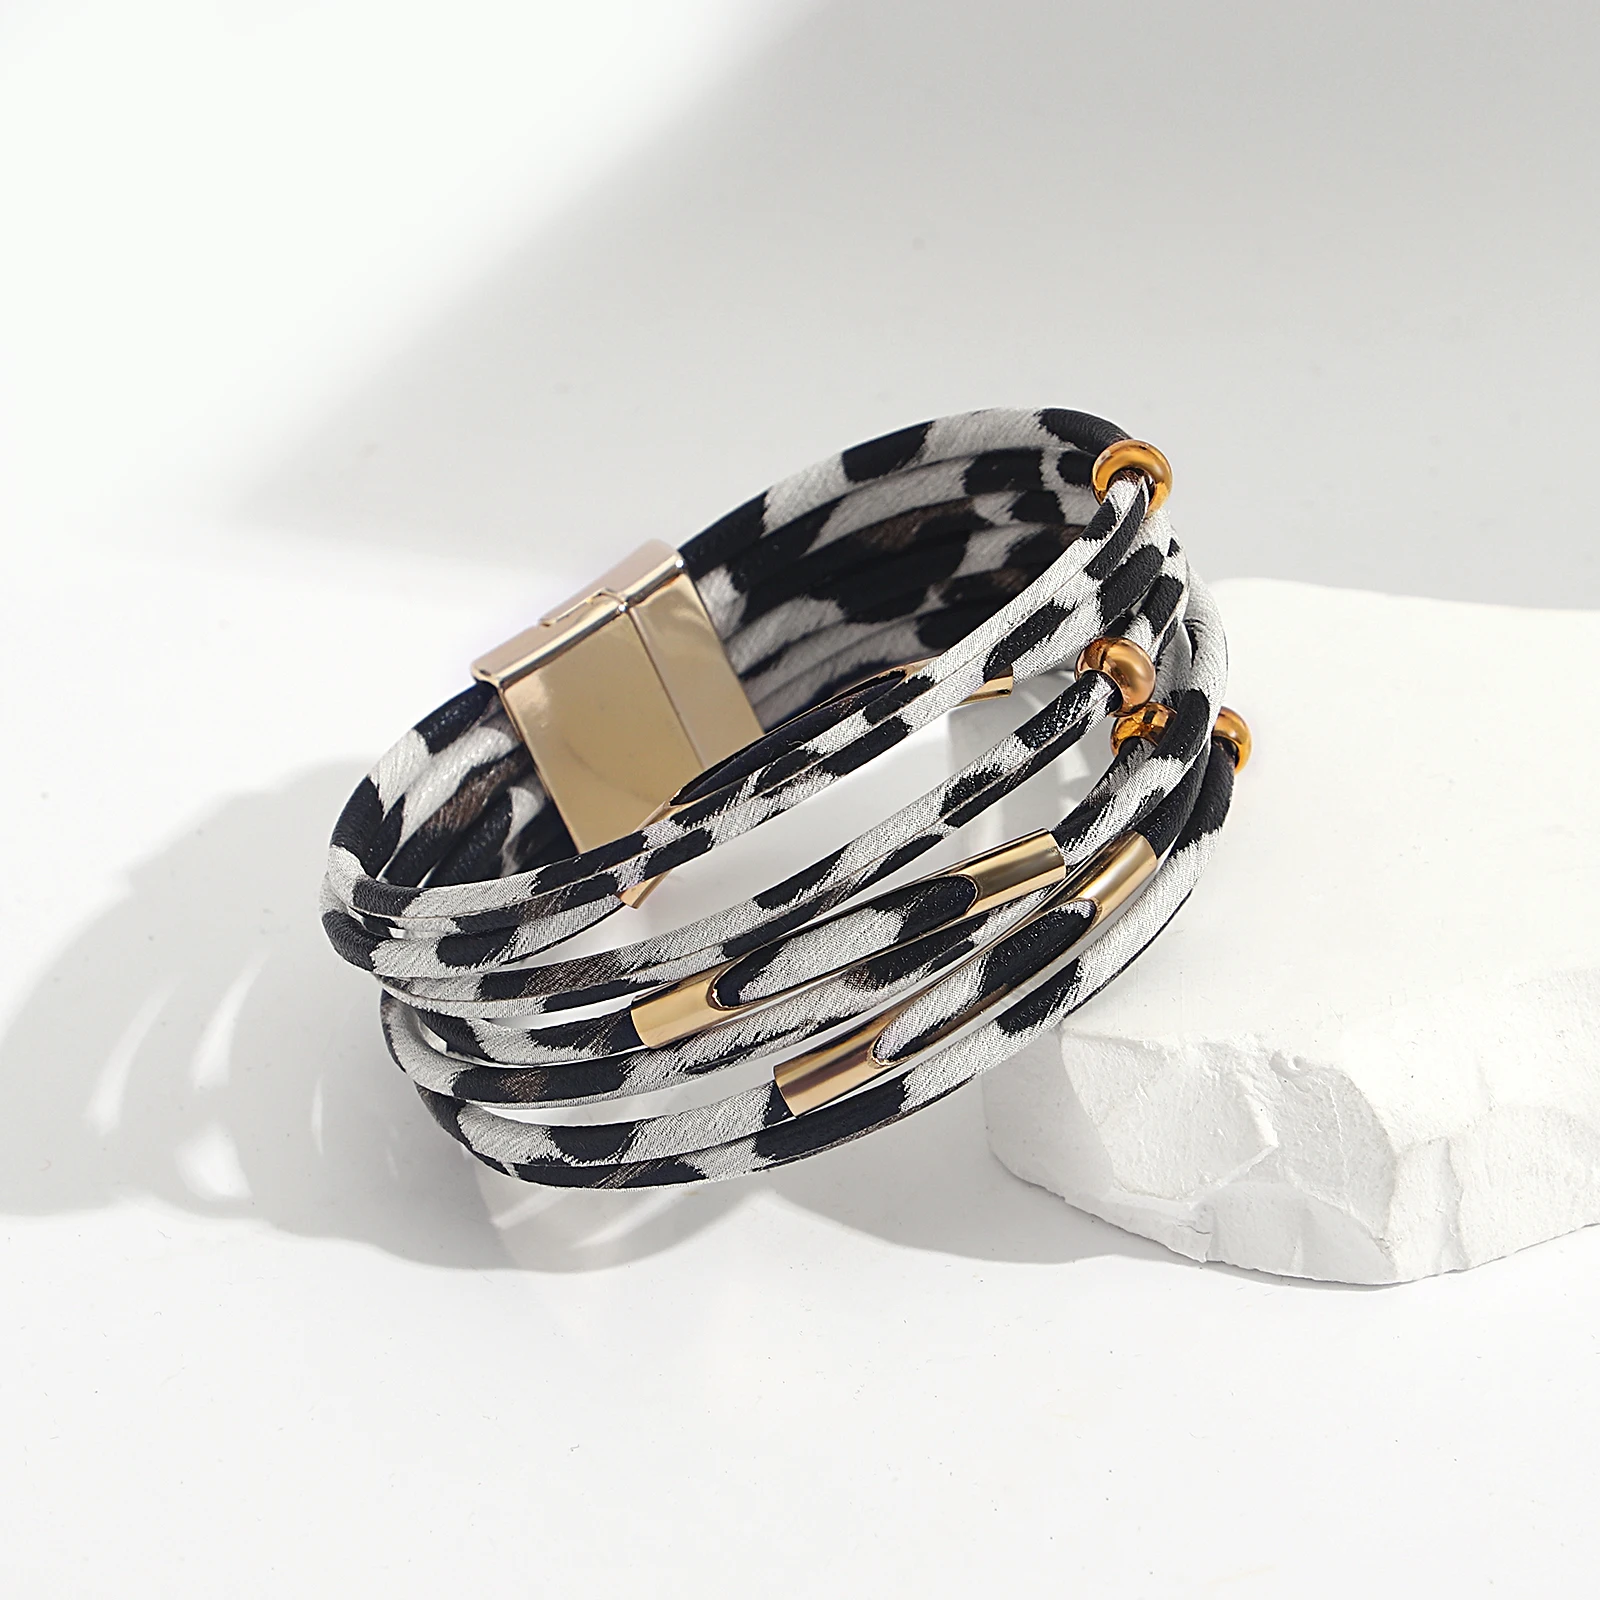 Очаровательные Леопардовые браслеты Amorcome для женщин и девочек-подростков, многослойные кожаные браслеты с широкой оберткой, ювелирные изделия